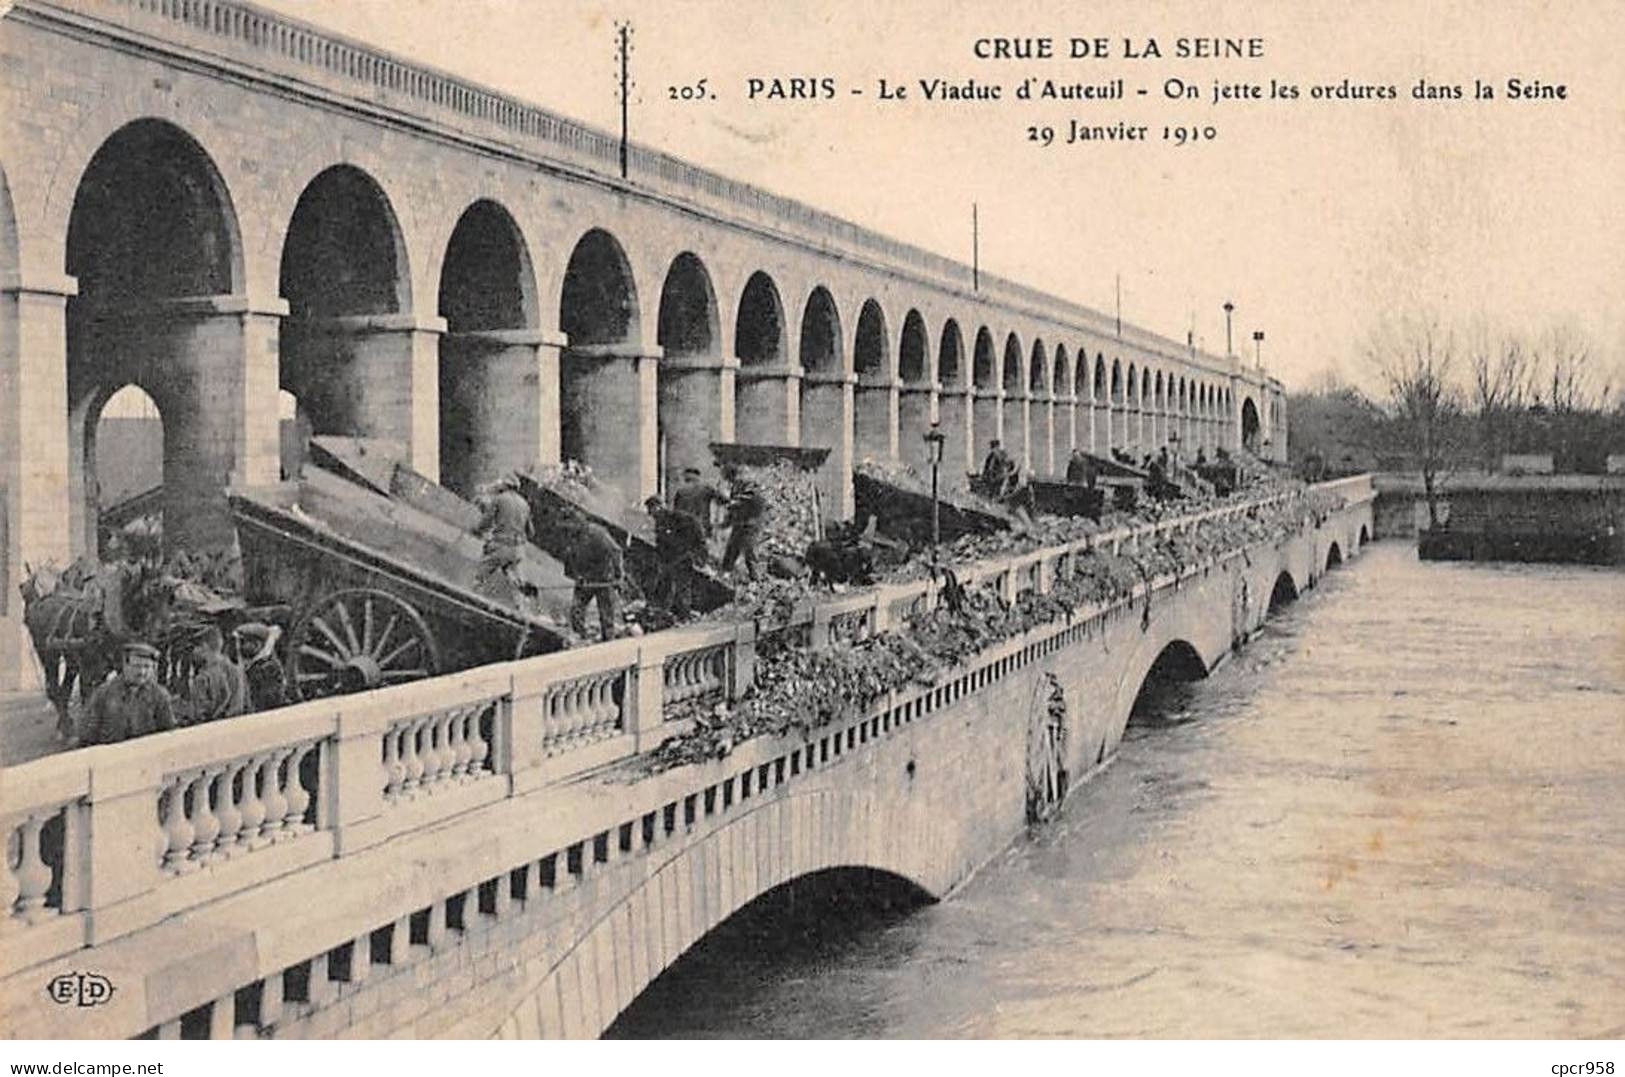 75 - PARIS - SAN55648 - Le Viaduc D'Auteuil - On Jette Les Ordure Dans La Seine - 29 Janvier 1910 - Crue De La Seine - Überschwemmung 1910